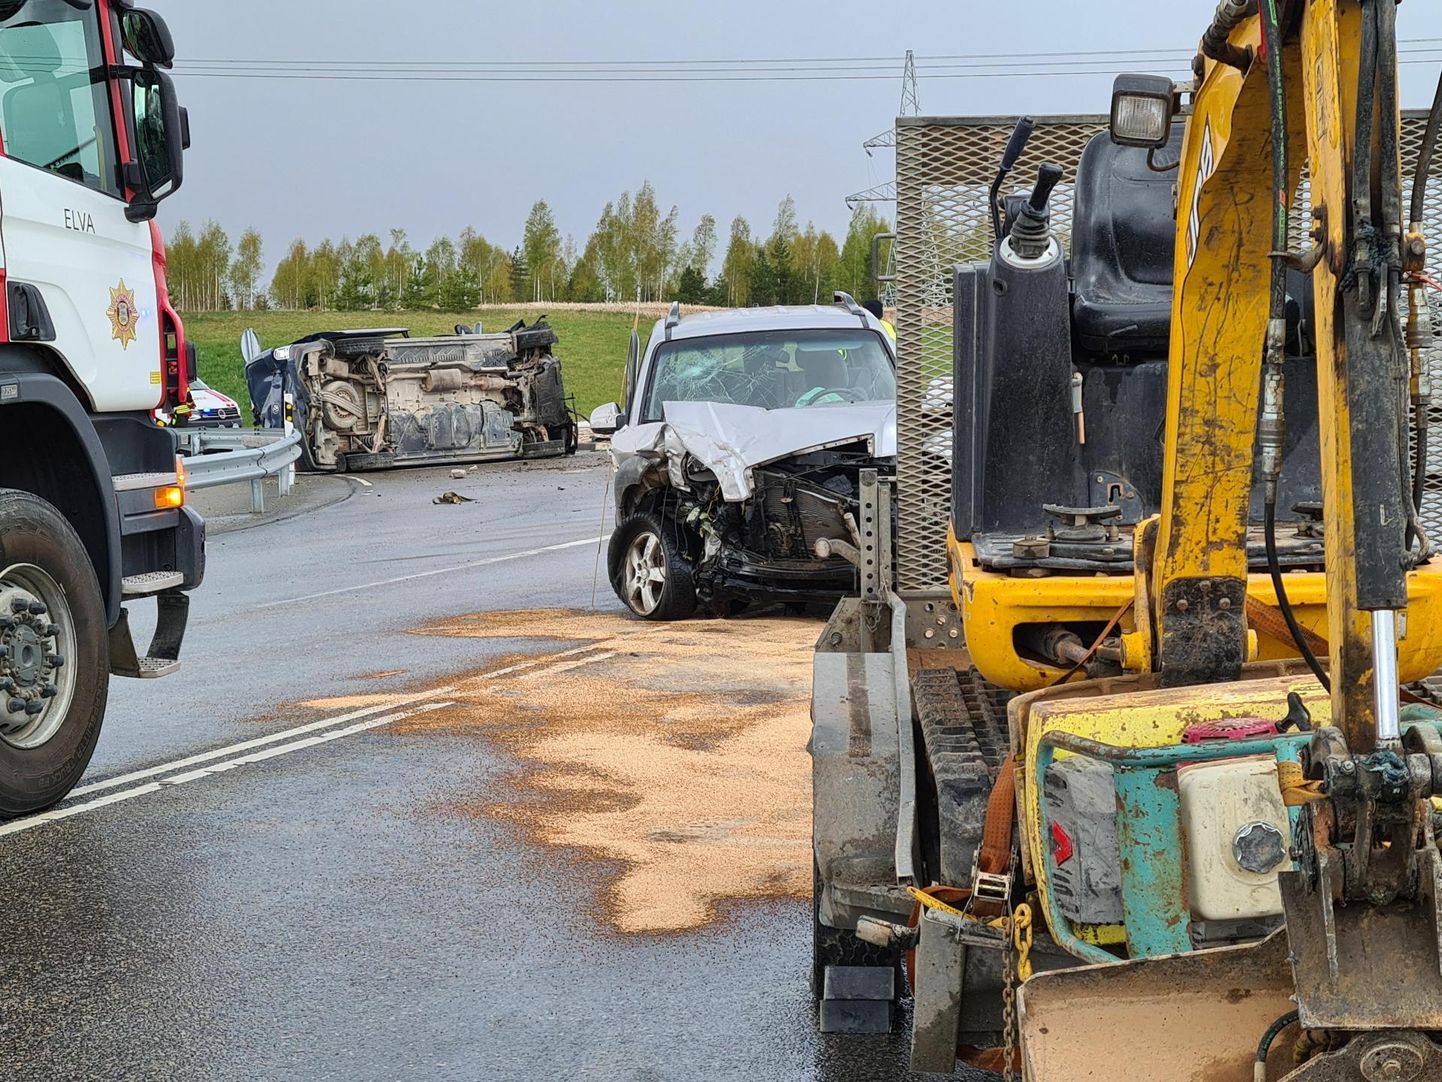 В волости Эльва в Тартумаа на первом километре дороги Эльва-Пухья 28 апреля произошло серьезное дорожно-транспортное происшествие, в результате которого погибли два человека. В ходе производства по уголовному делу выяснилось, что виновником ДТП стал 91-летний мужчина, управлявший автомобилем Hyundai.